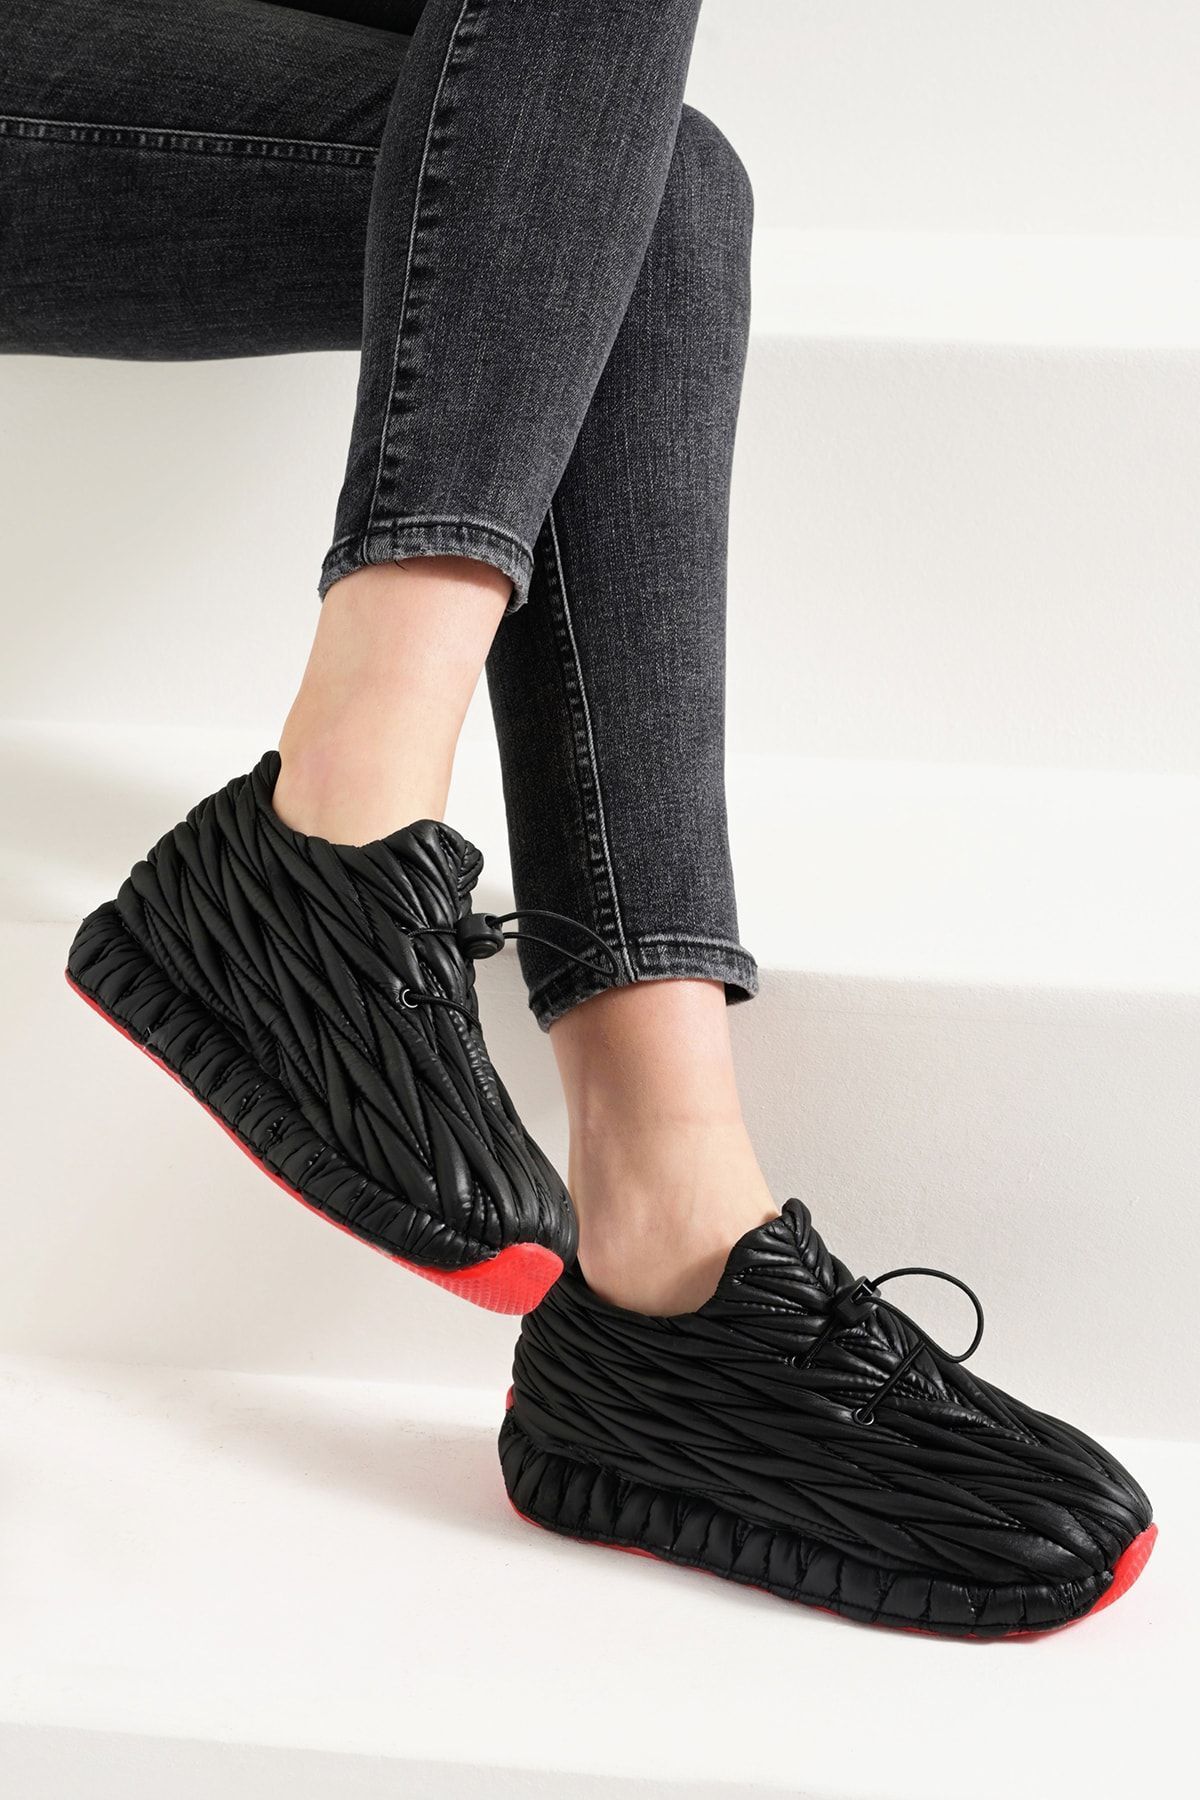 Beyond  Kadın Siyah Breezy Paraşüt Kumaş Kırmızı Taban Sneaker Spor Ayakkabı 3cm Byndbre01